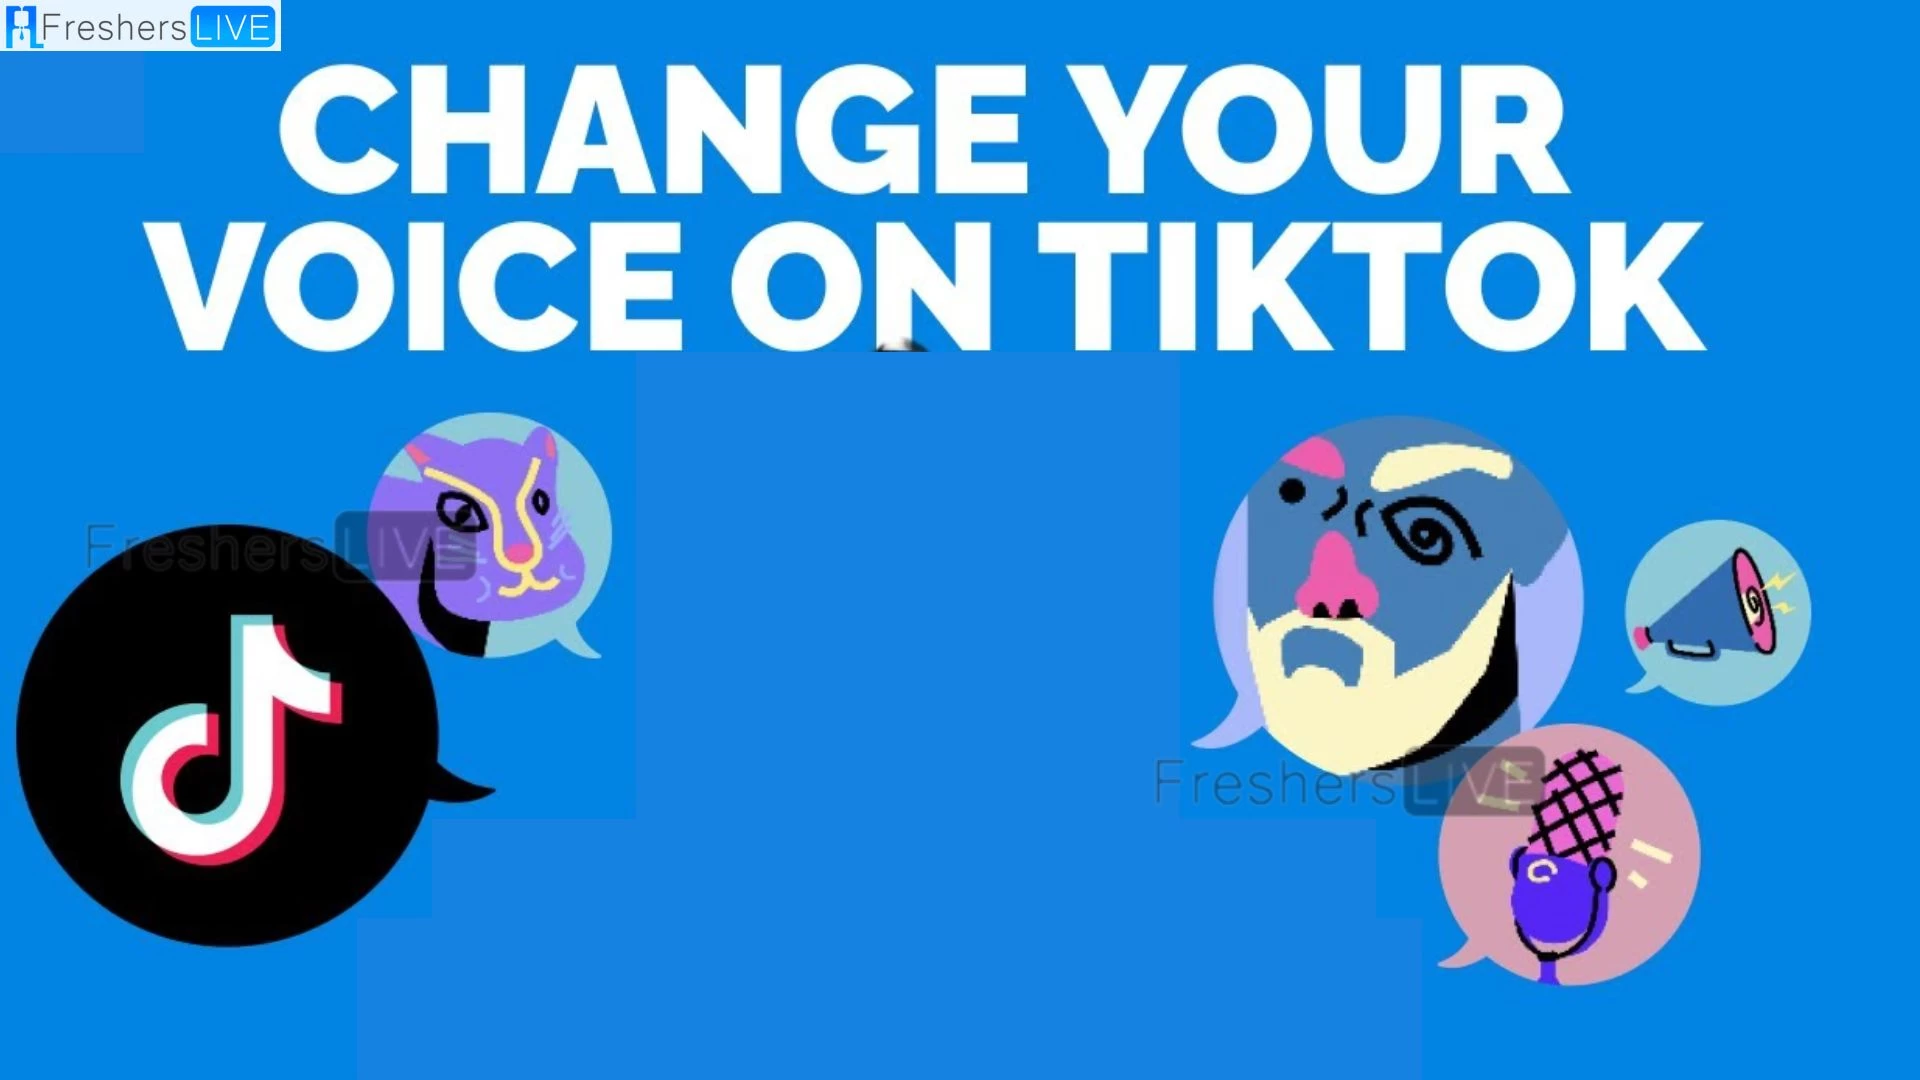 TikTok AI Voice Filter, How to Get the AI Voice Filter on TikTok?